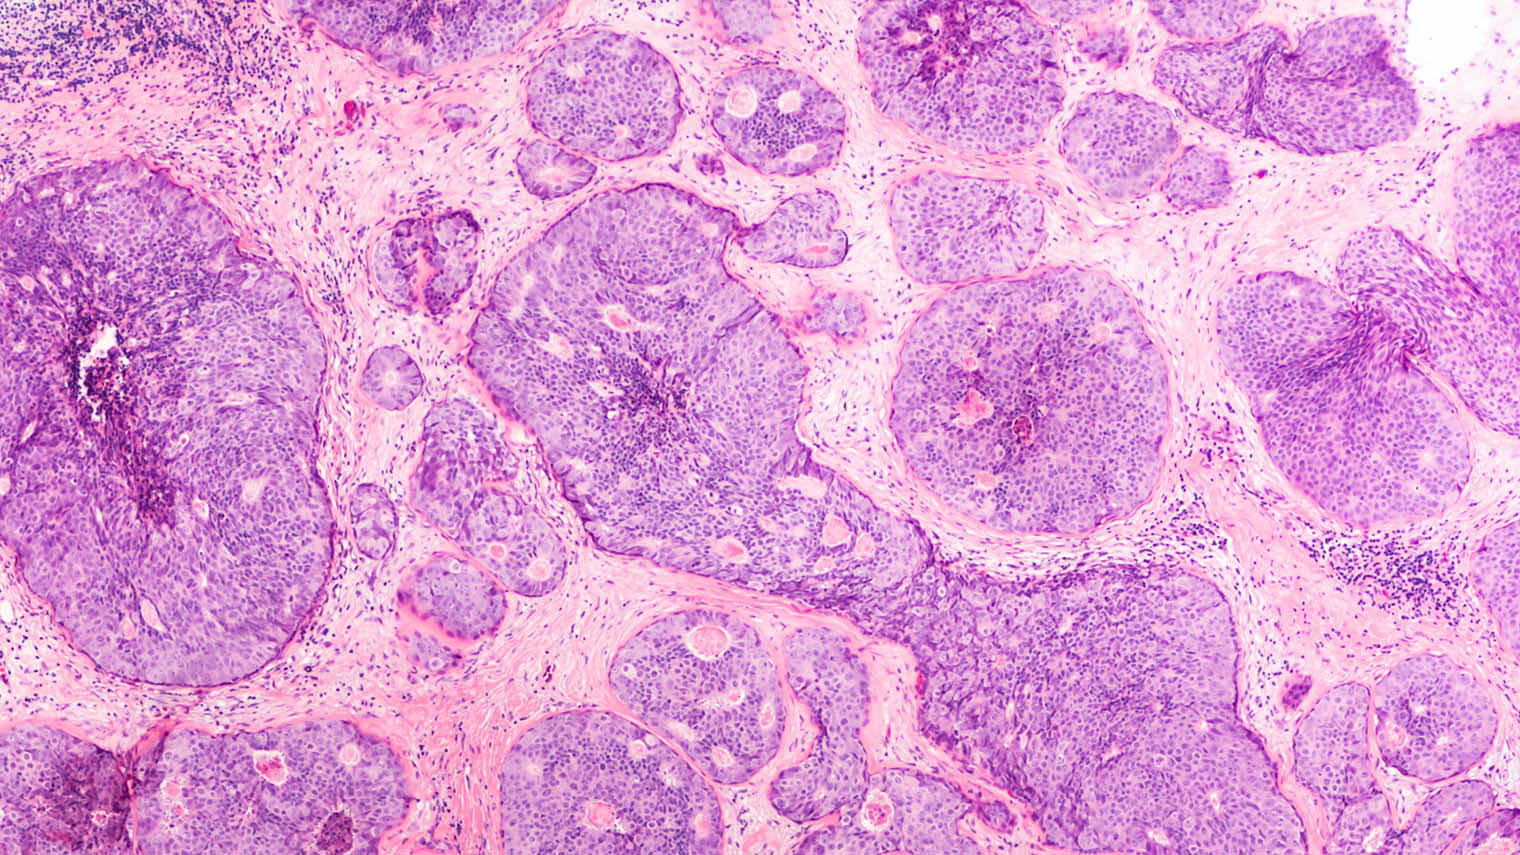 Ductal carcinoma in situ shown in a breast cancer biopsy